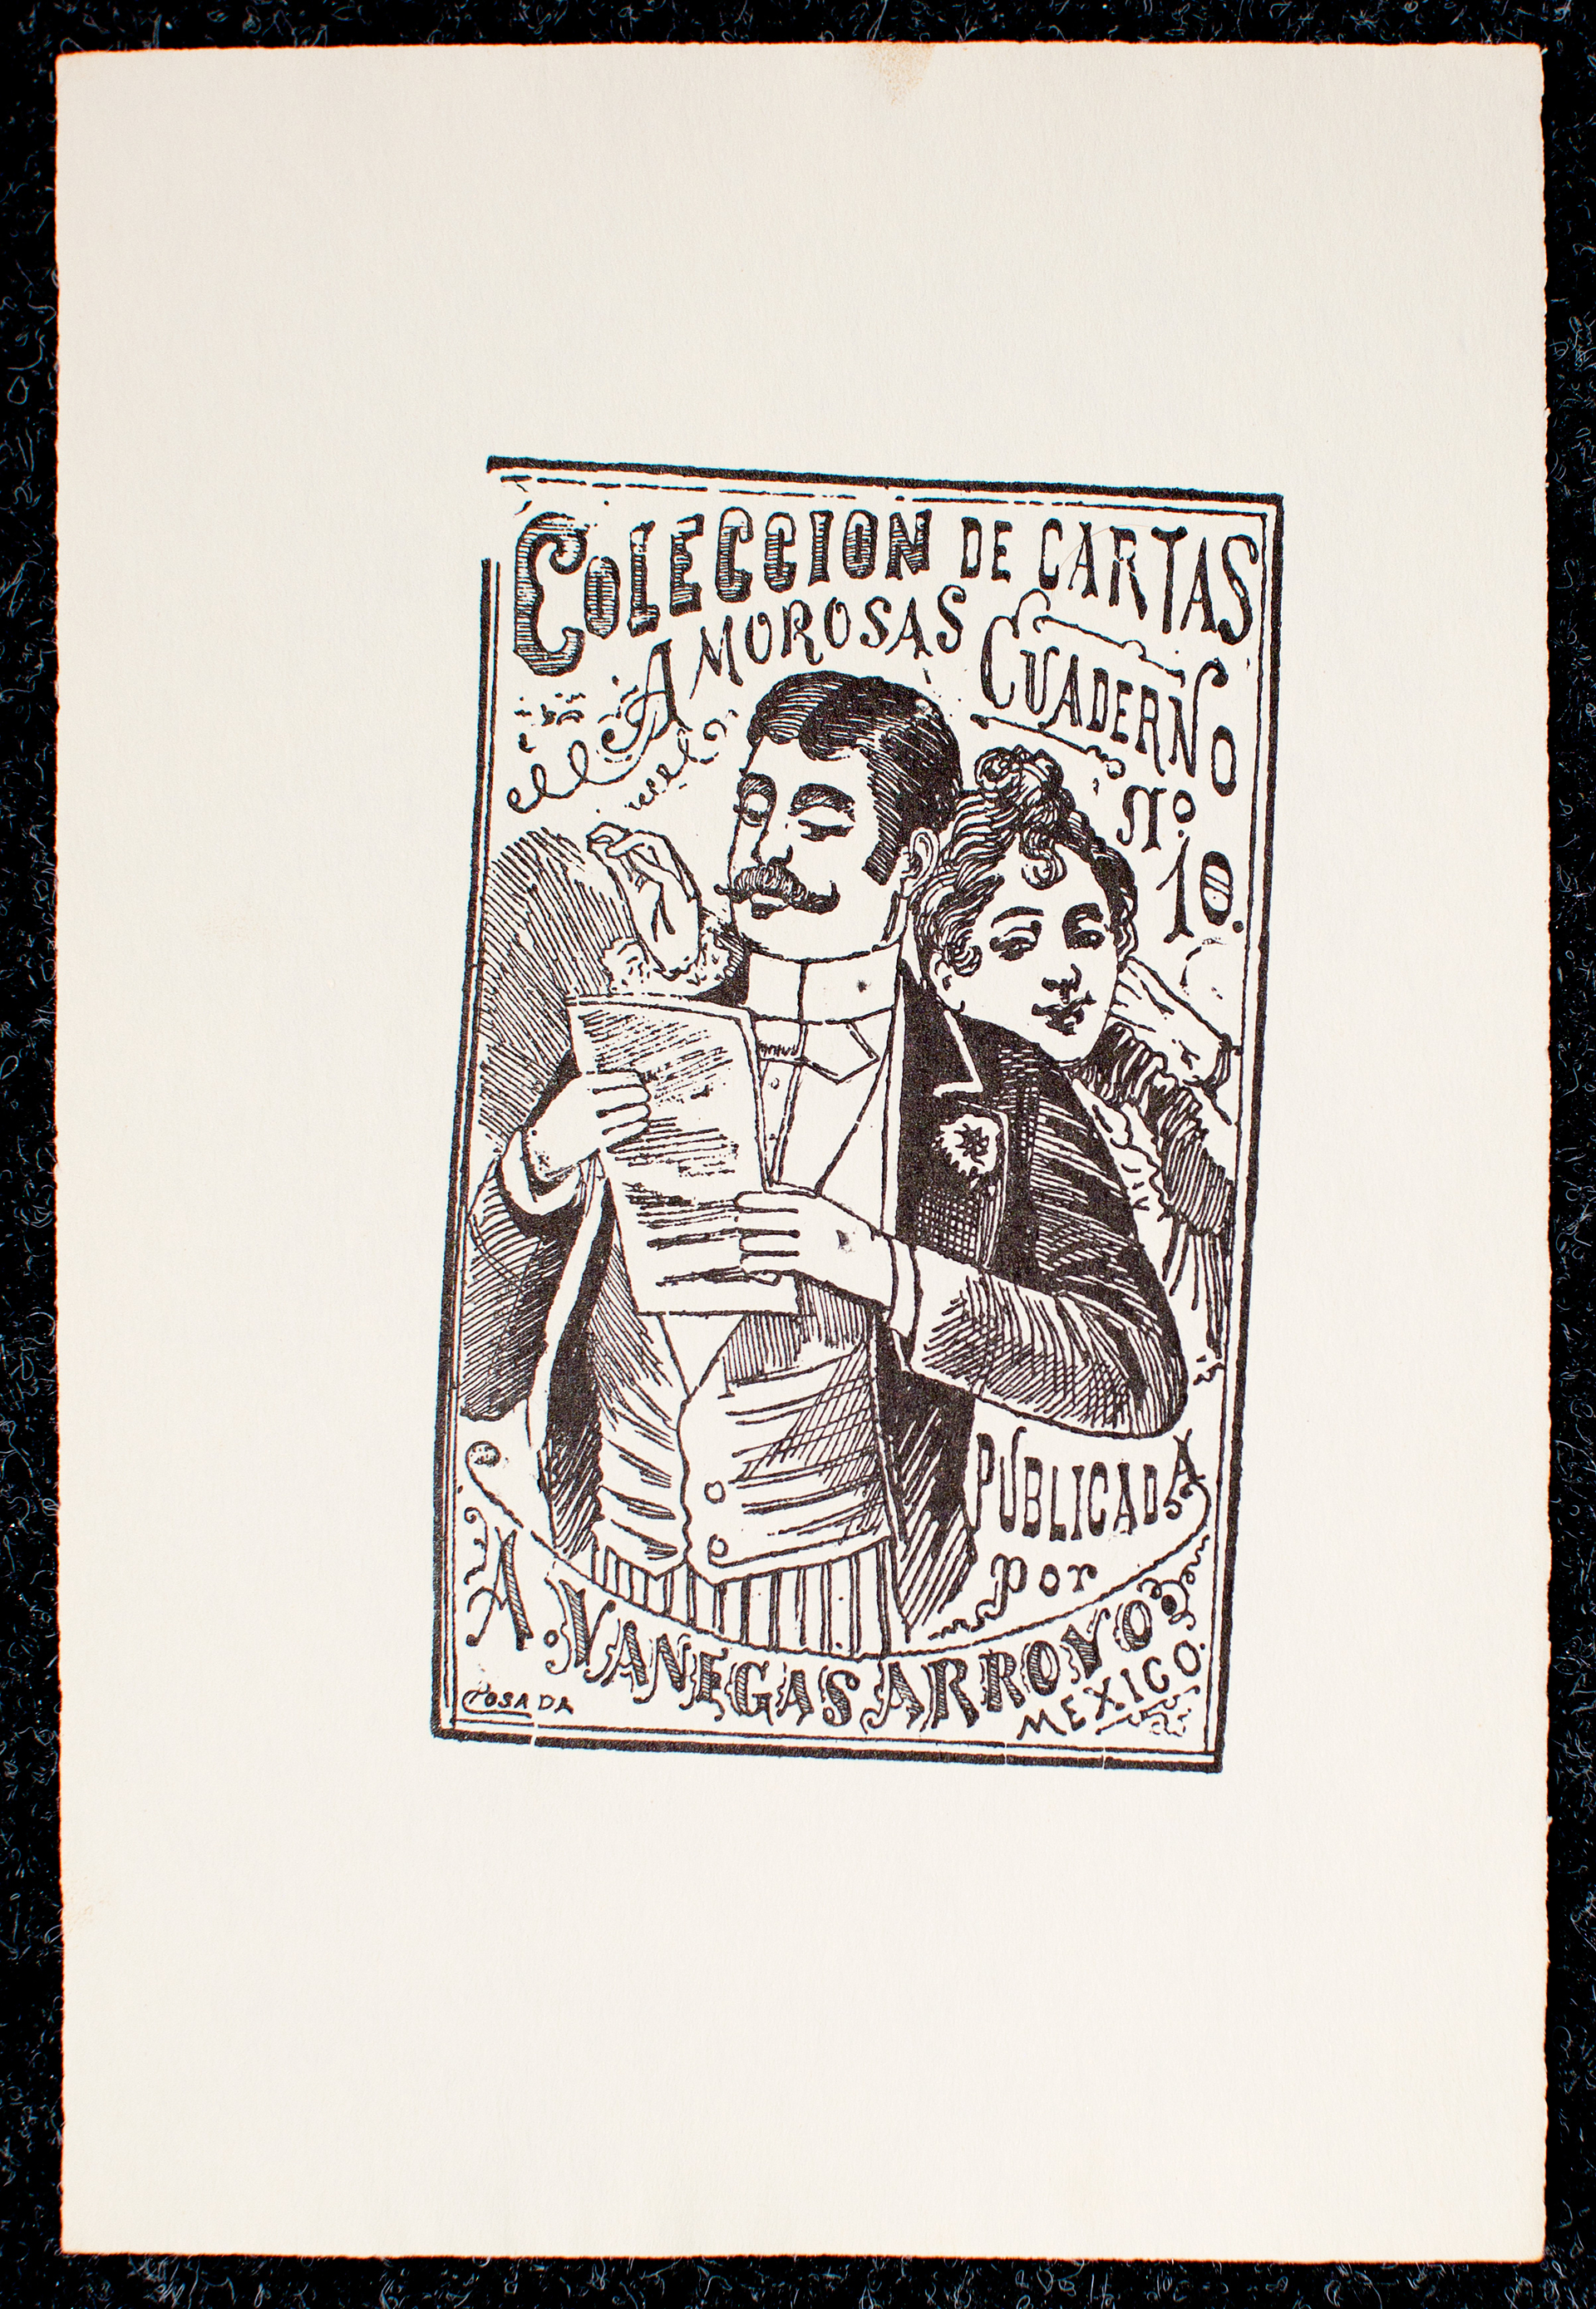 Coleccion de Cartas Amorosas, Cuaderno No. 10 by José Guadalupe Posada